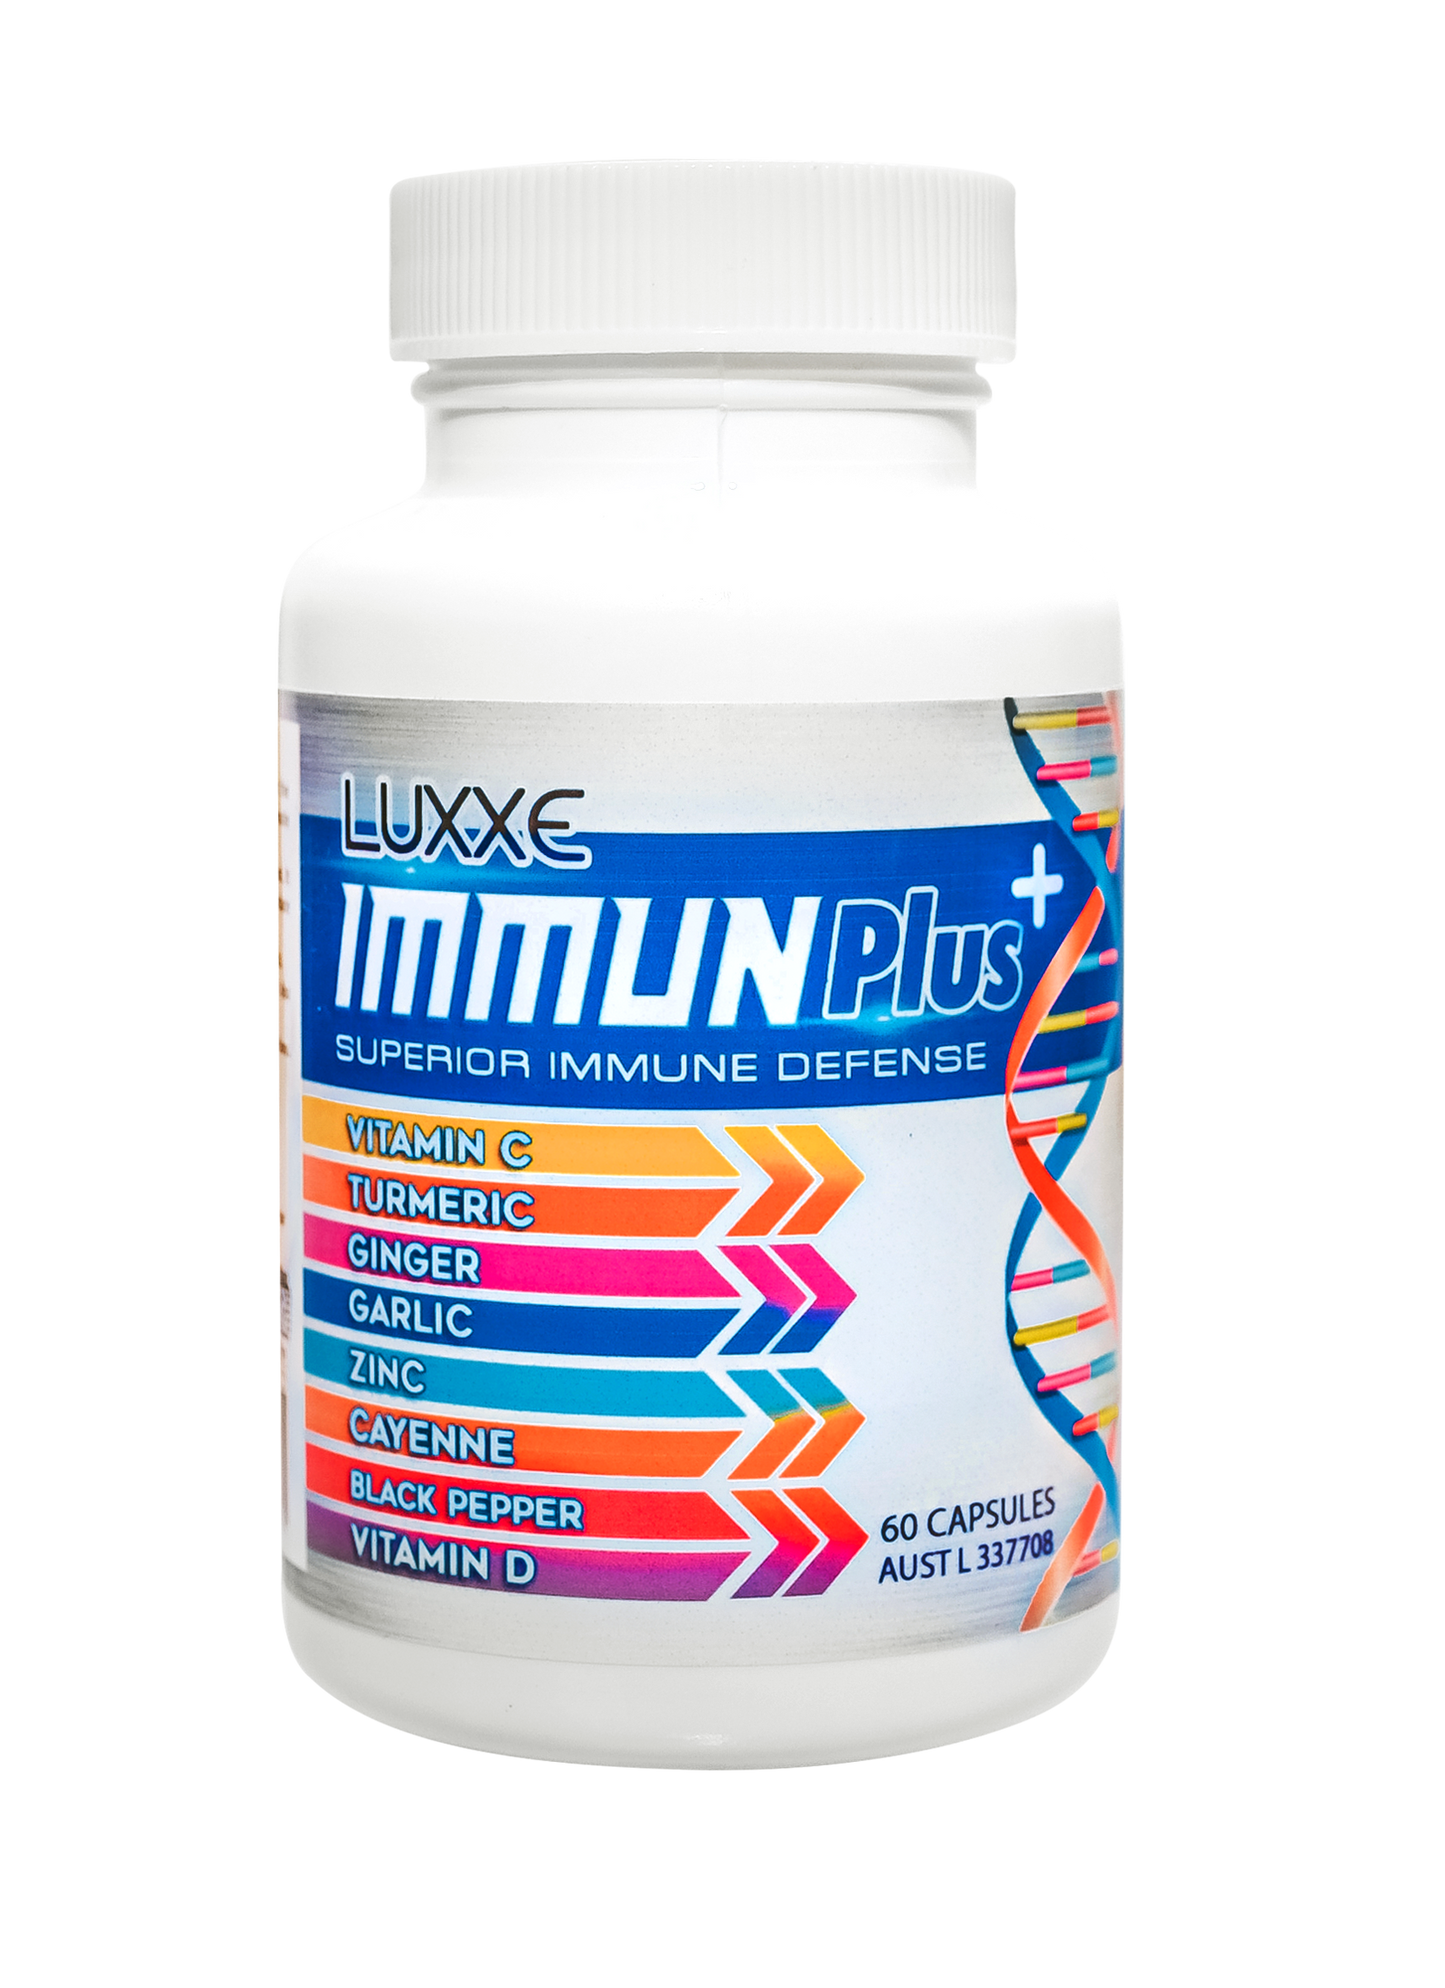 Luxxe Immunplus Herbal Extract Vitamin C, D & Zinc 60 Capsules